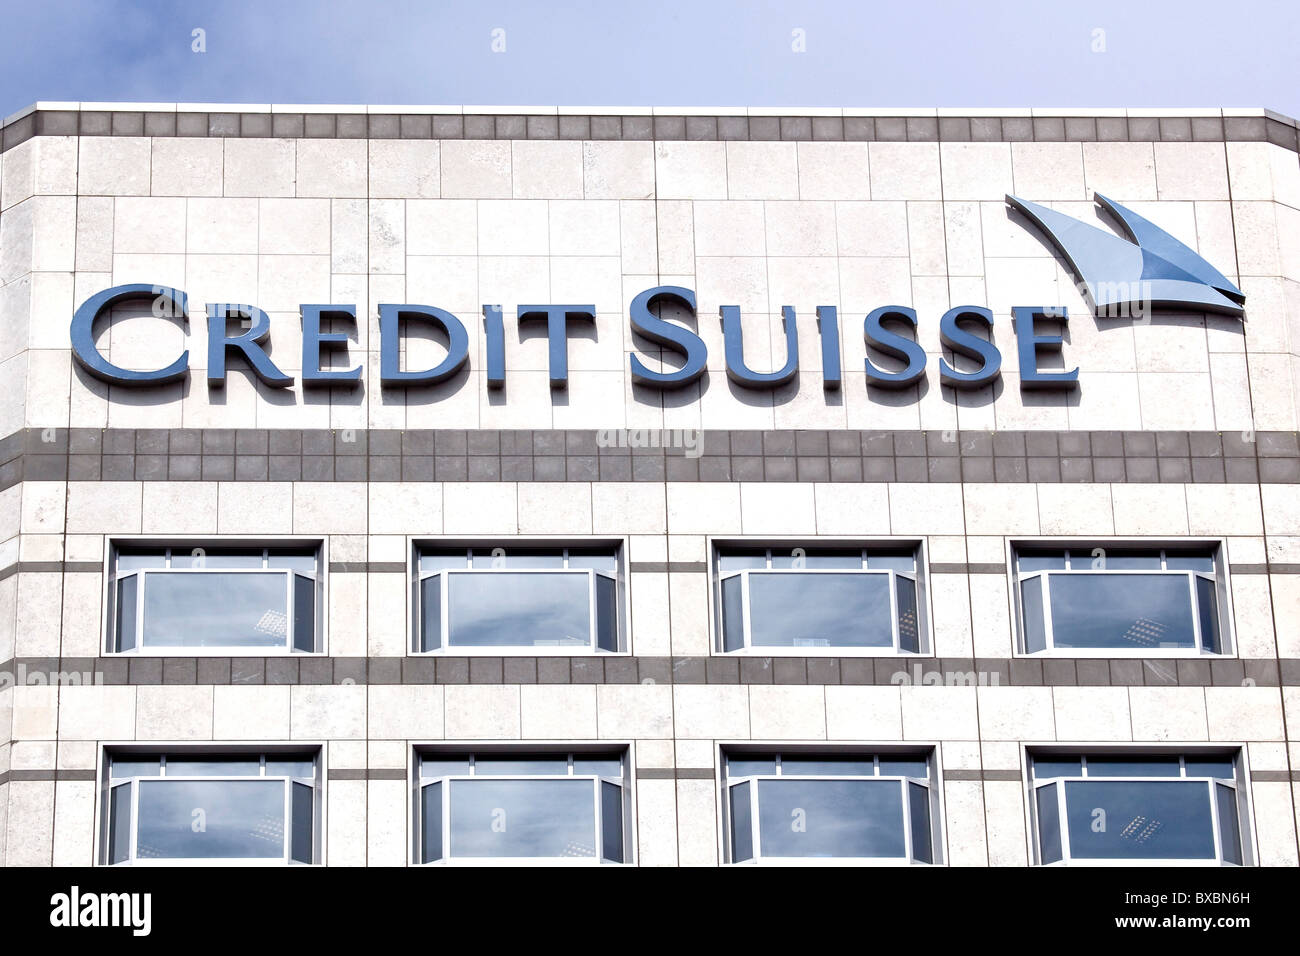 La banque suisse Credit Suisse à Canary Wharf, Londres, Angleterre, Royaume-Uni, Europe Banque D'Images